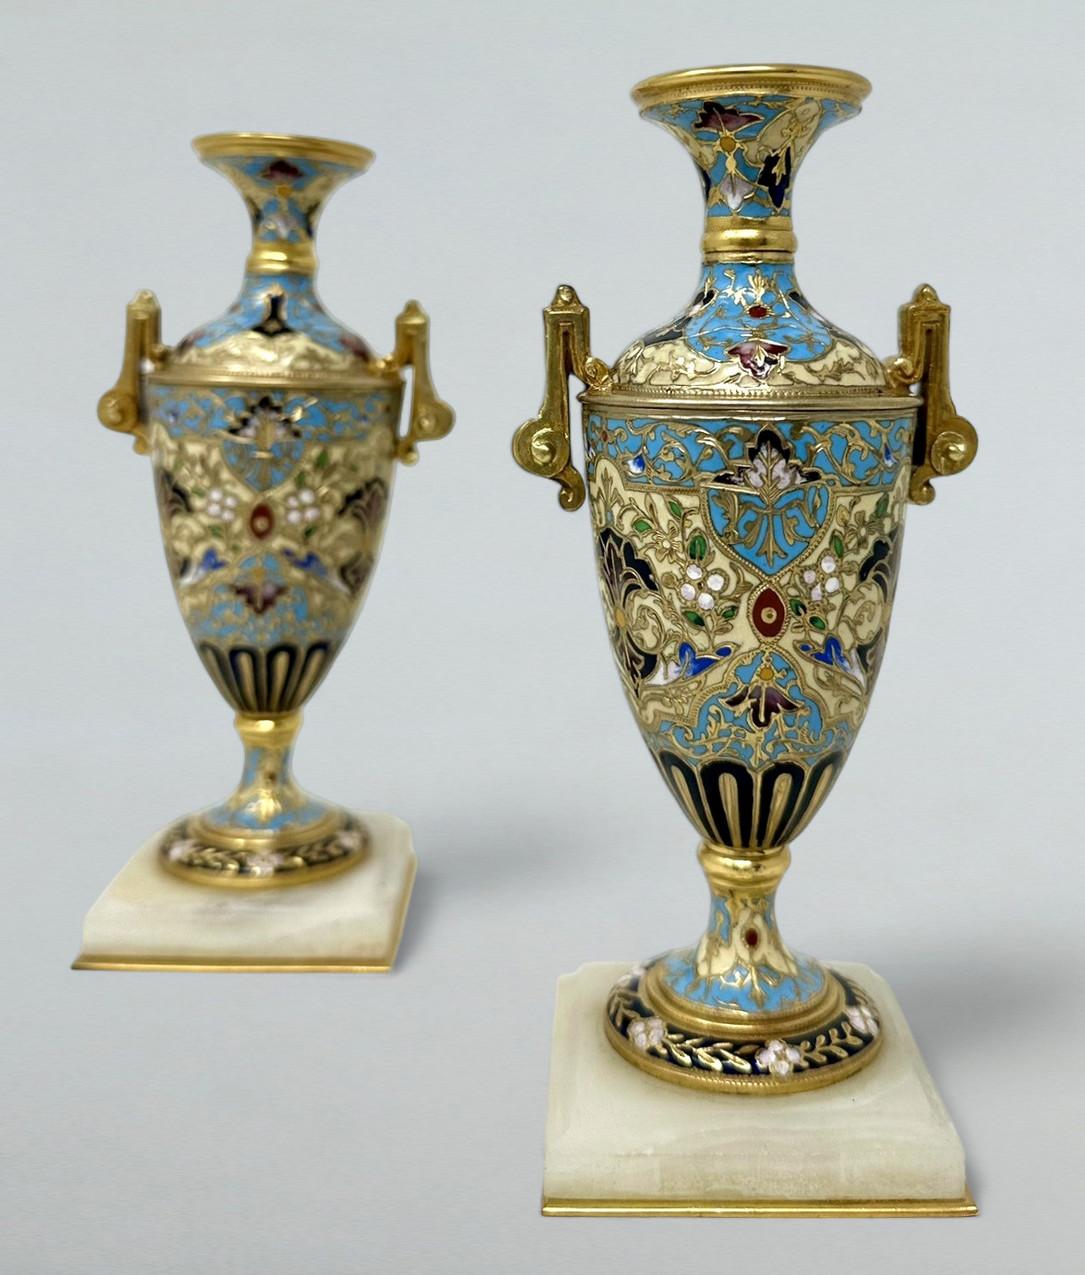 Ein außergewöhnlich stilvolles Paar französischer Bronze Dore und Champleve Cloisonne Doppelgriff Vasen von herausragender Qualität und kompakter Größe. Drittes Quartal des neunzehnten Jahrhunderts. 

Dieses prächtige Vasenpaar ist aus vergoldetem